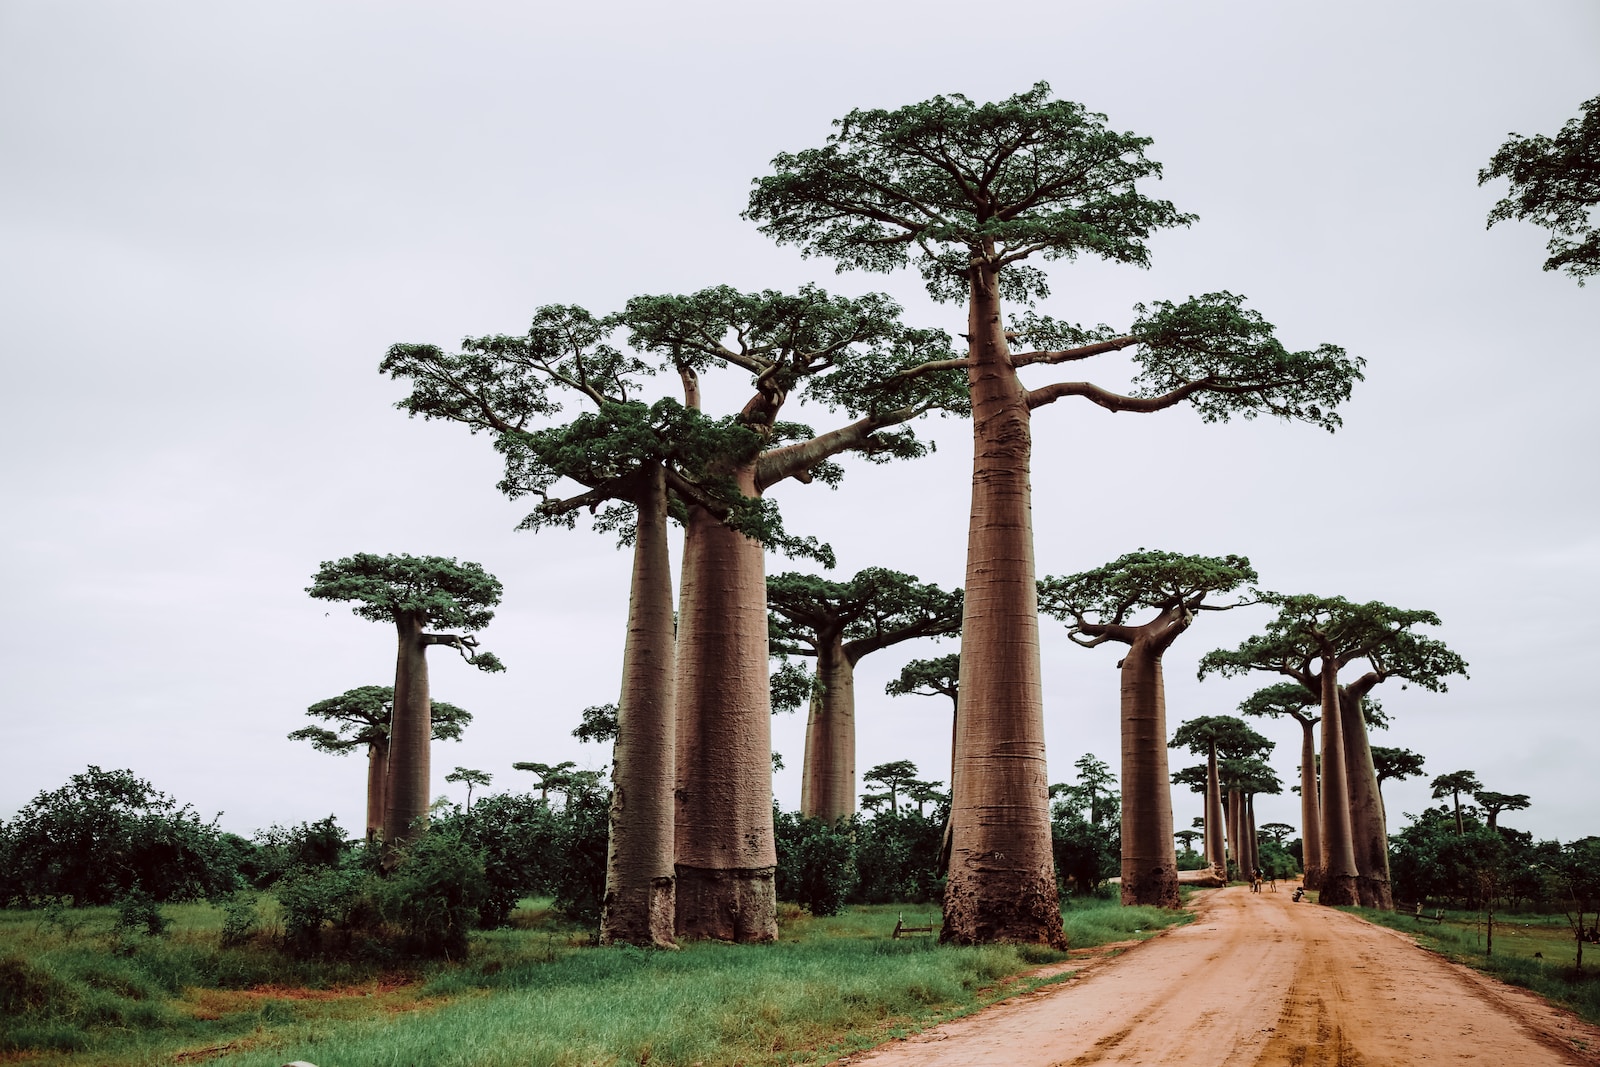 Baobabs near pathway during daytime